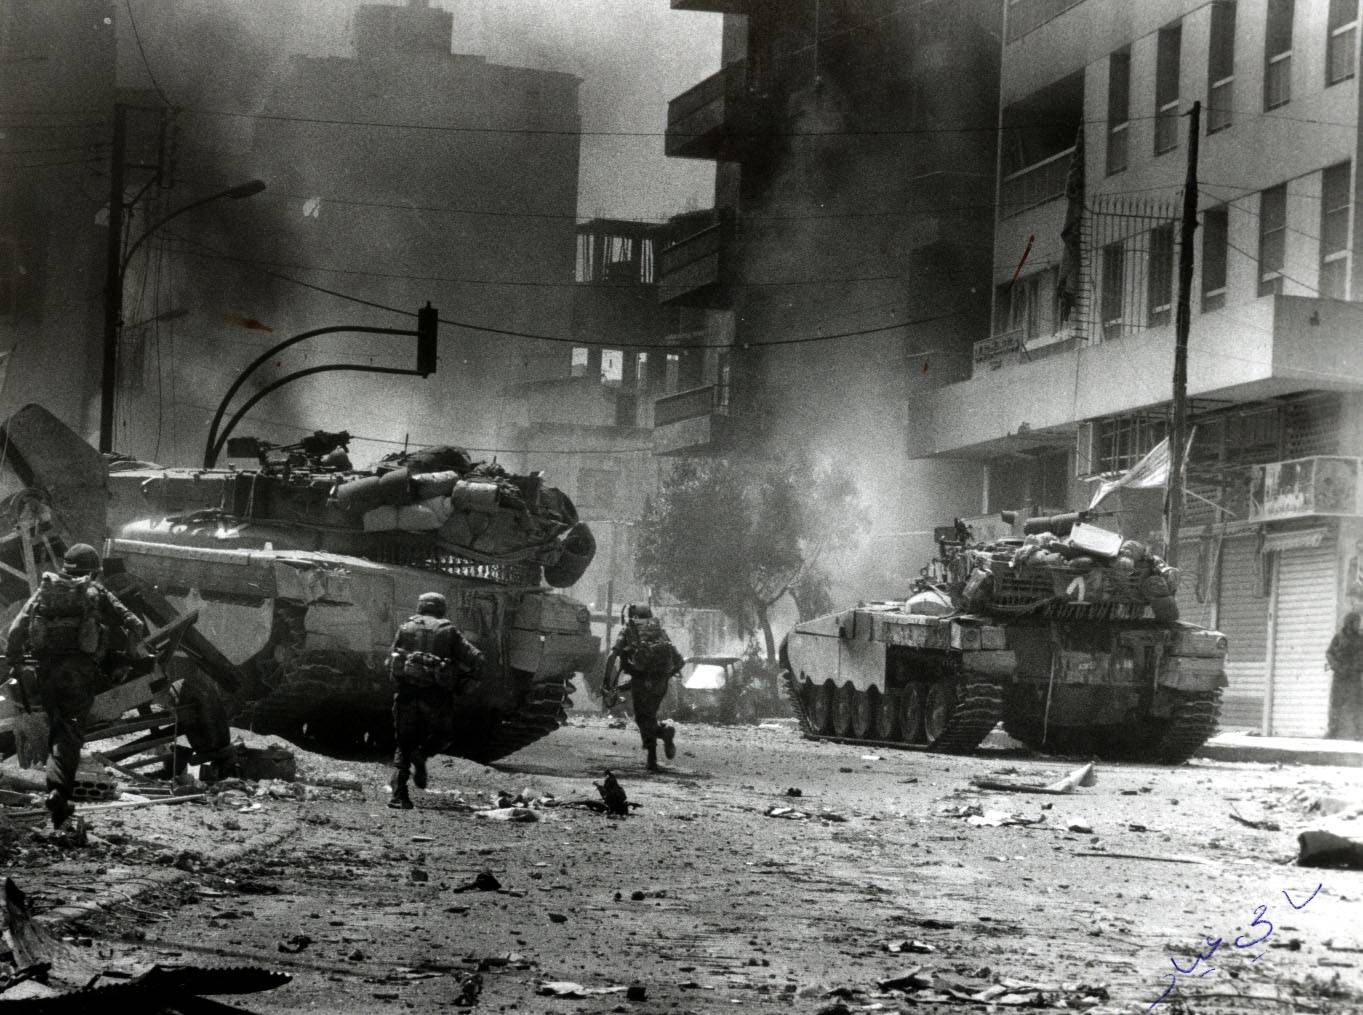 Реферат: Два мифа одного боя сирийские Т-72 в Ливанской войне 1982 года